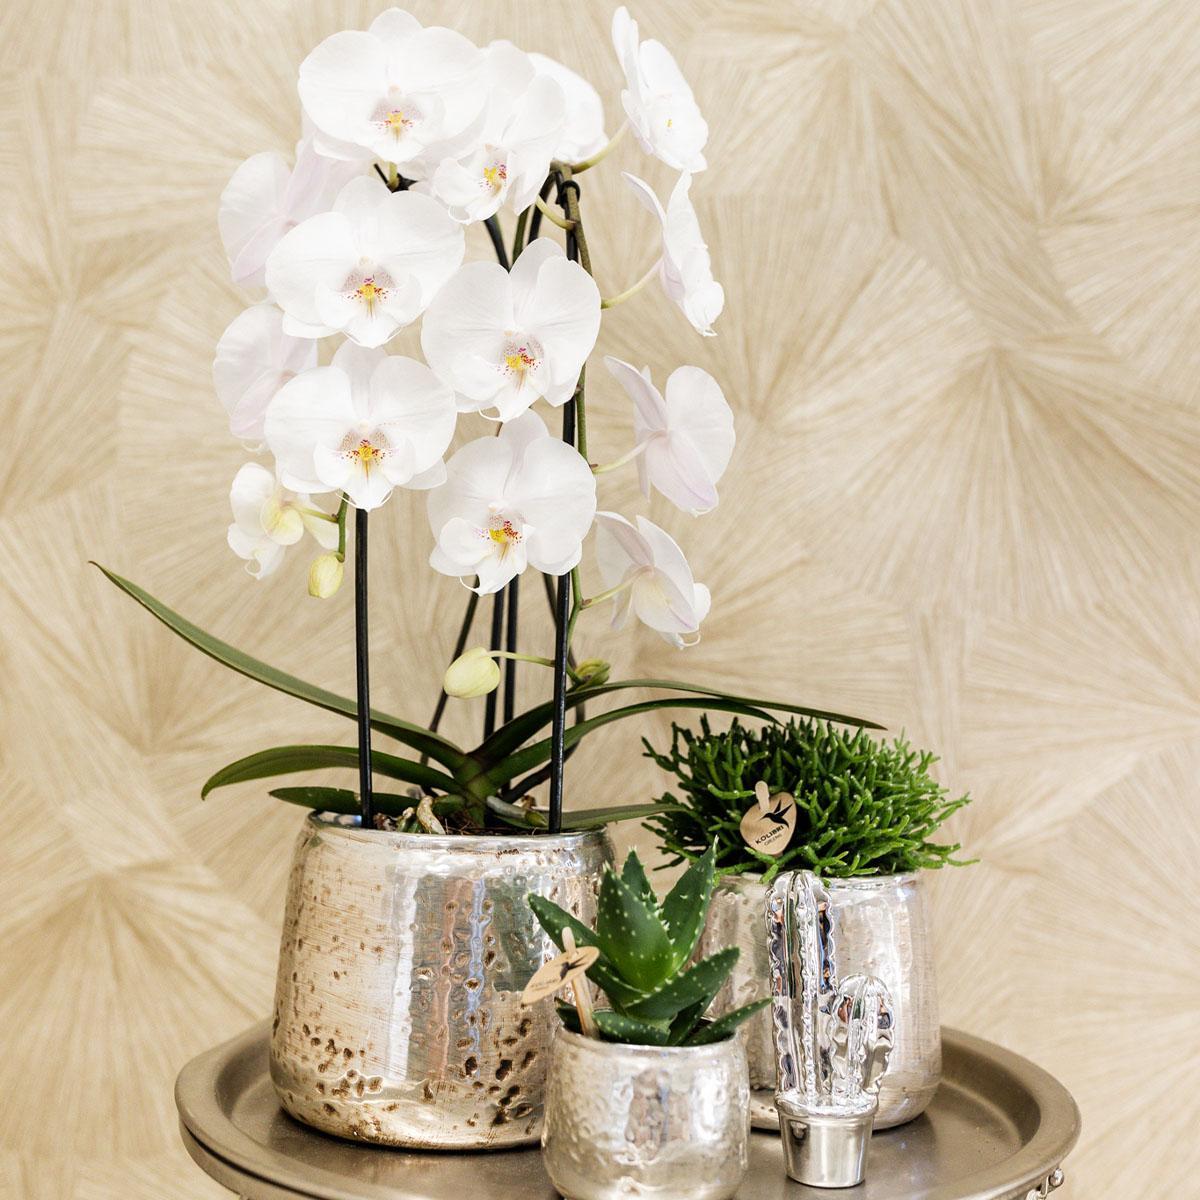 Kolibri Home | Ornament - Decoratie beeld Cactus - zilver